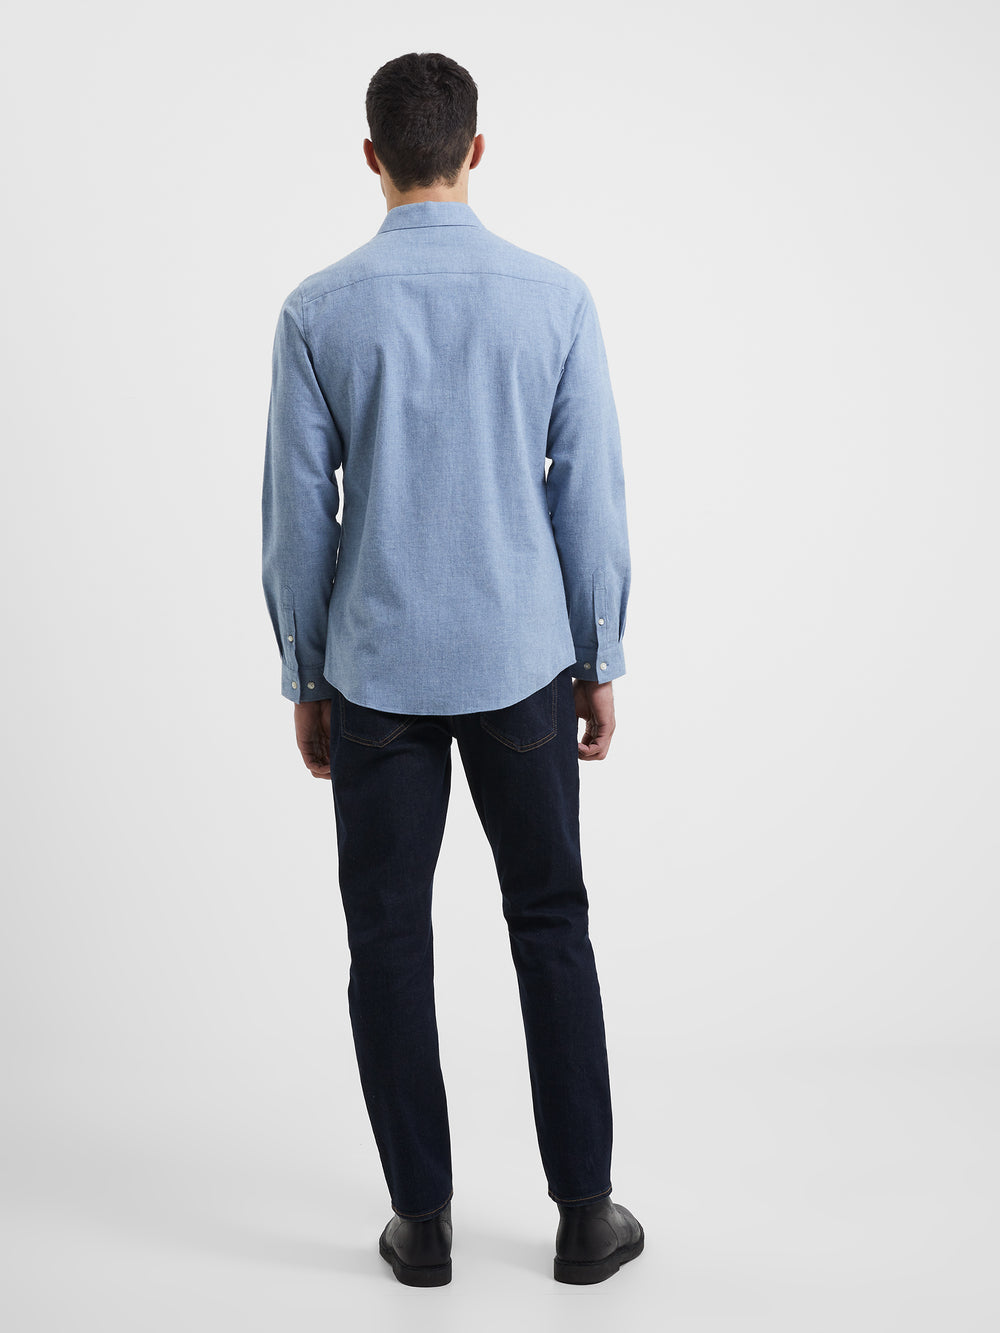 Brushed Melange Long Sleeve Shirt Light Blue | French Connection UK